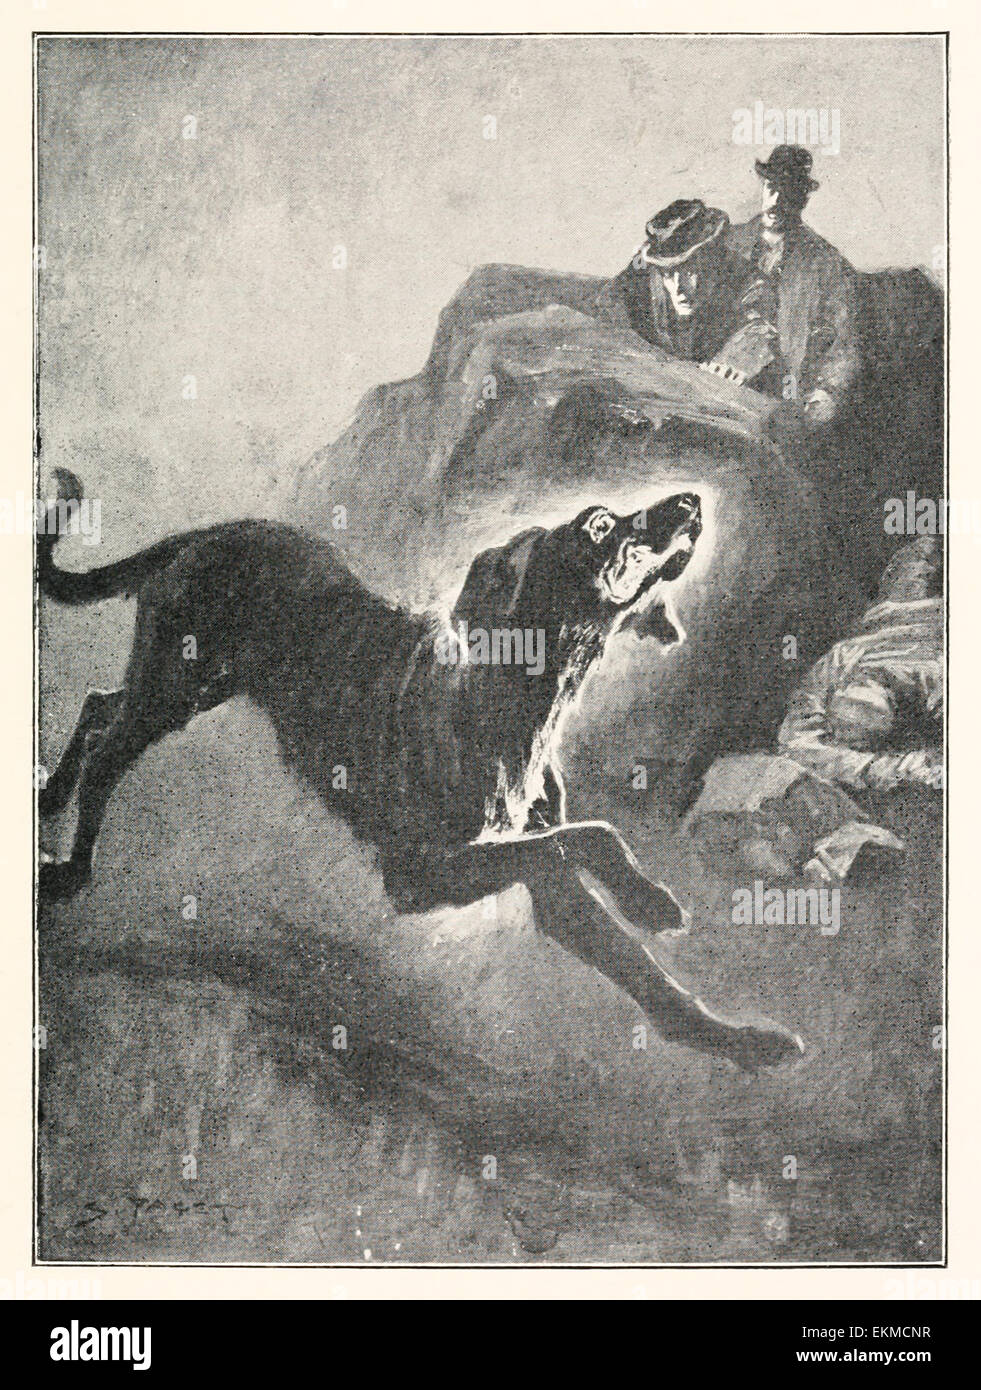 Der Hund von Baskerville" - von "Hound of the Baskervilles" von Doyle  (1859-1930). Illustration von Sidney Paget (1860-1908). Siehe Beschreibung  für mehr Informationen Stockfotografie - Alamy